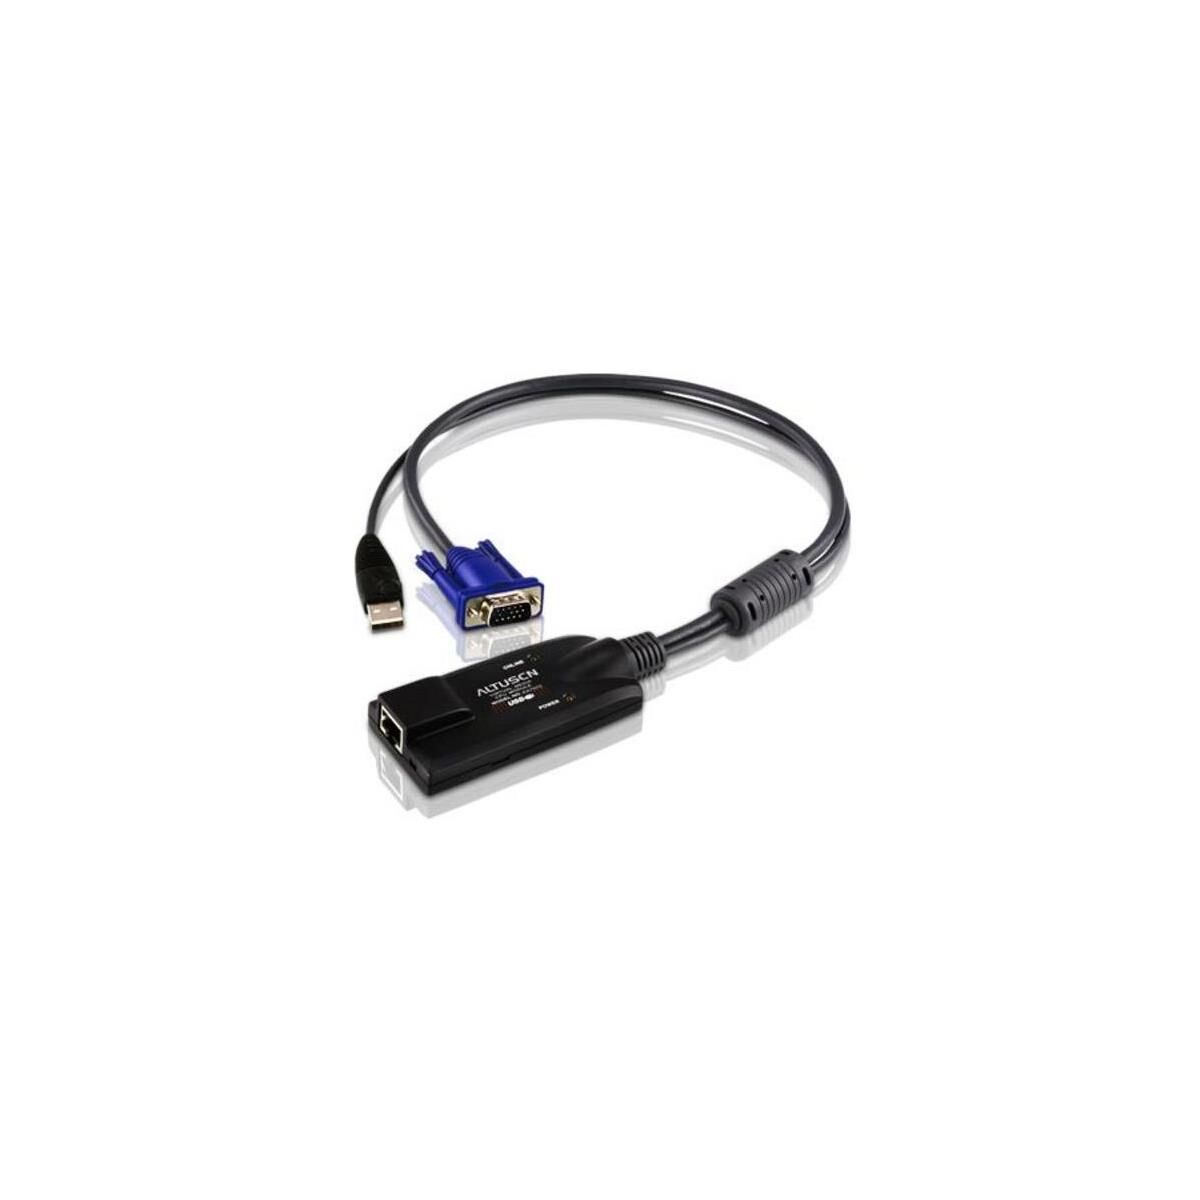 Aten KA7570 USB KVM Adapter Cable, CPU Module